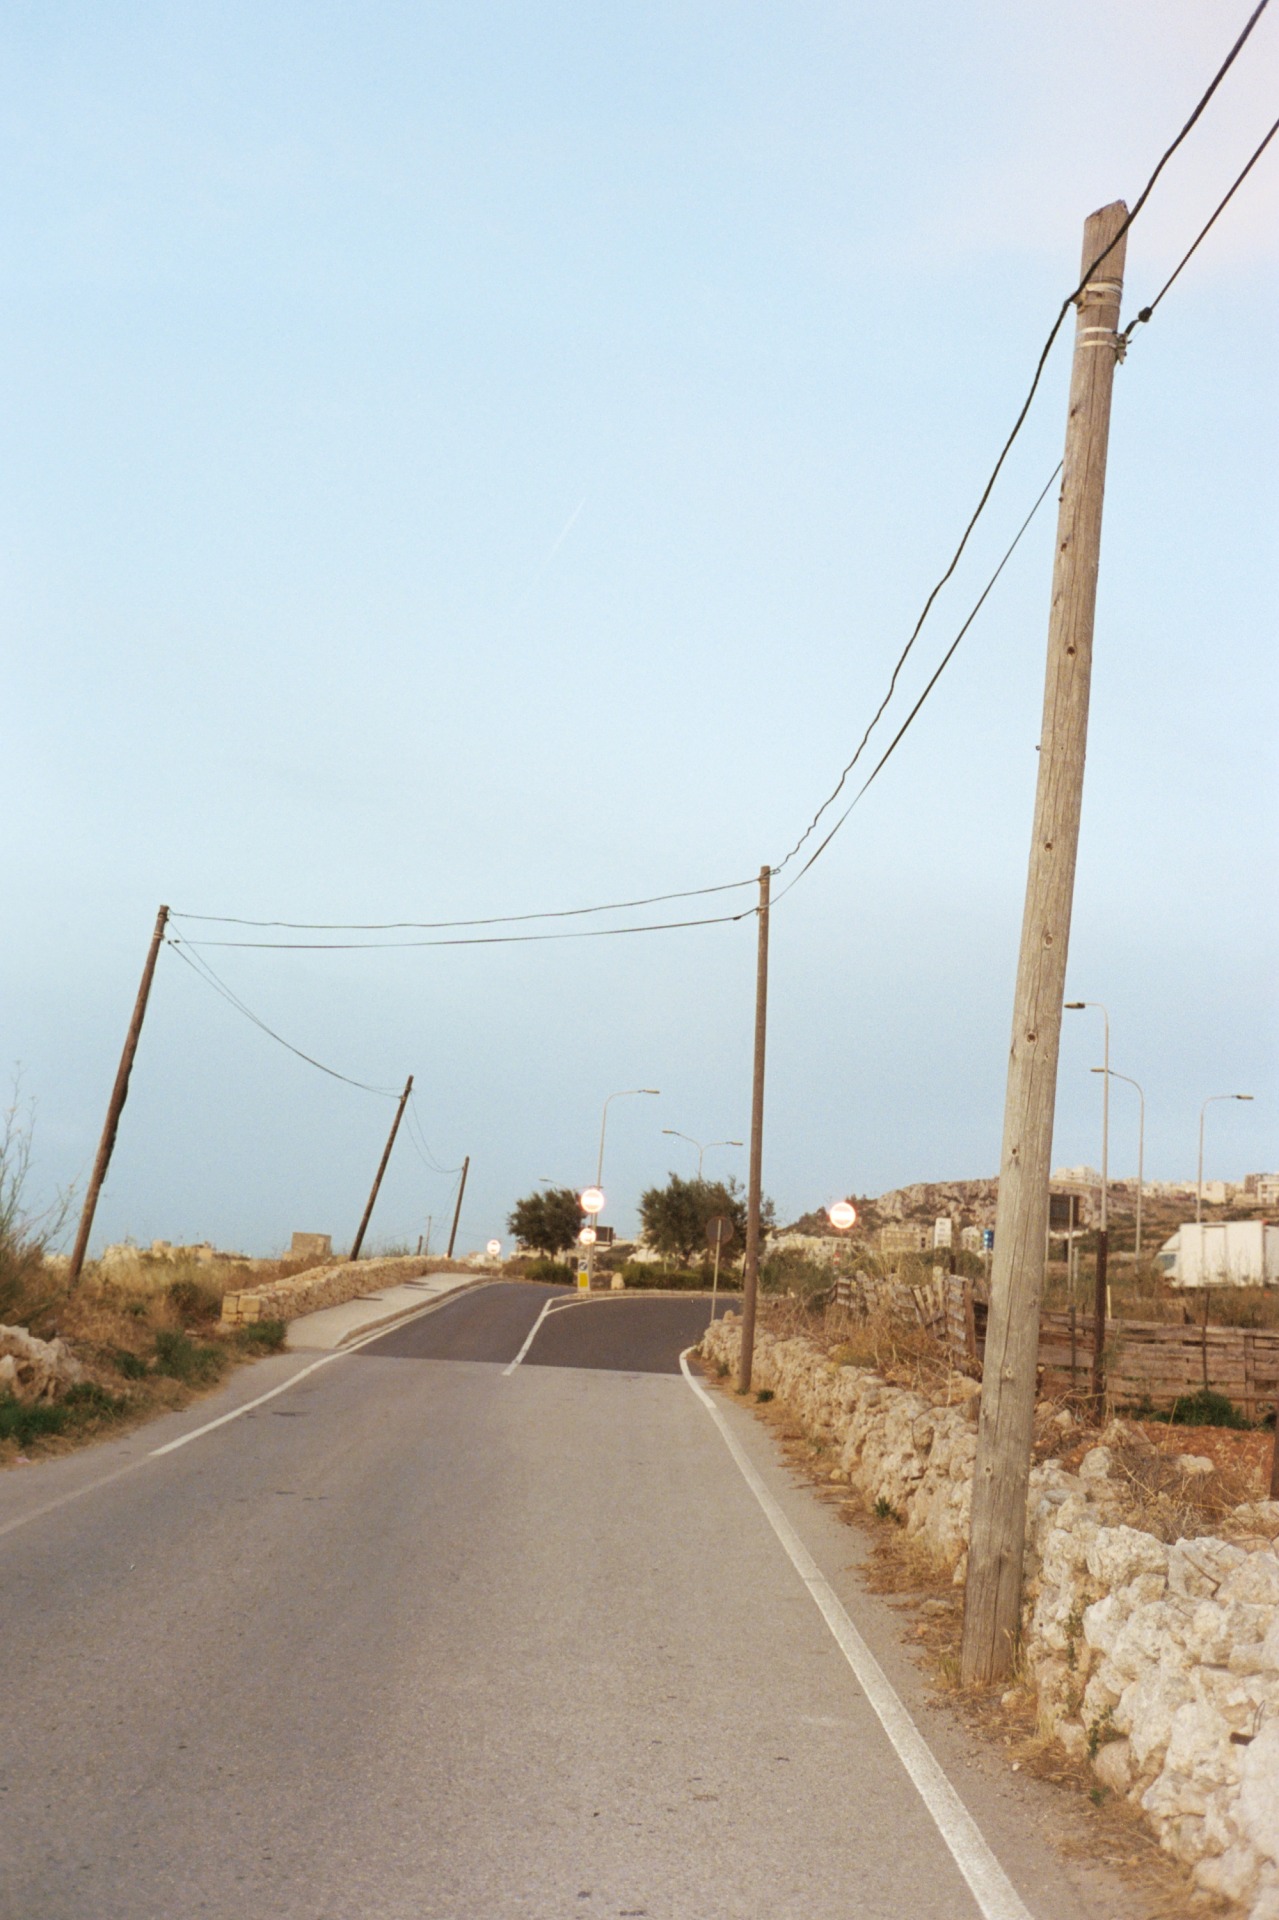 Dancing poles #empty#road #dancingpoles #malta#filmphotography #portra #kodak